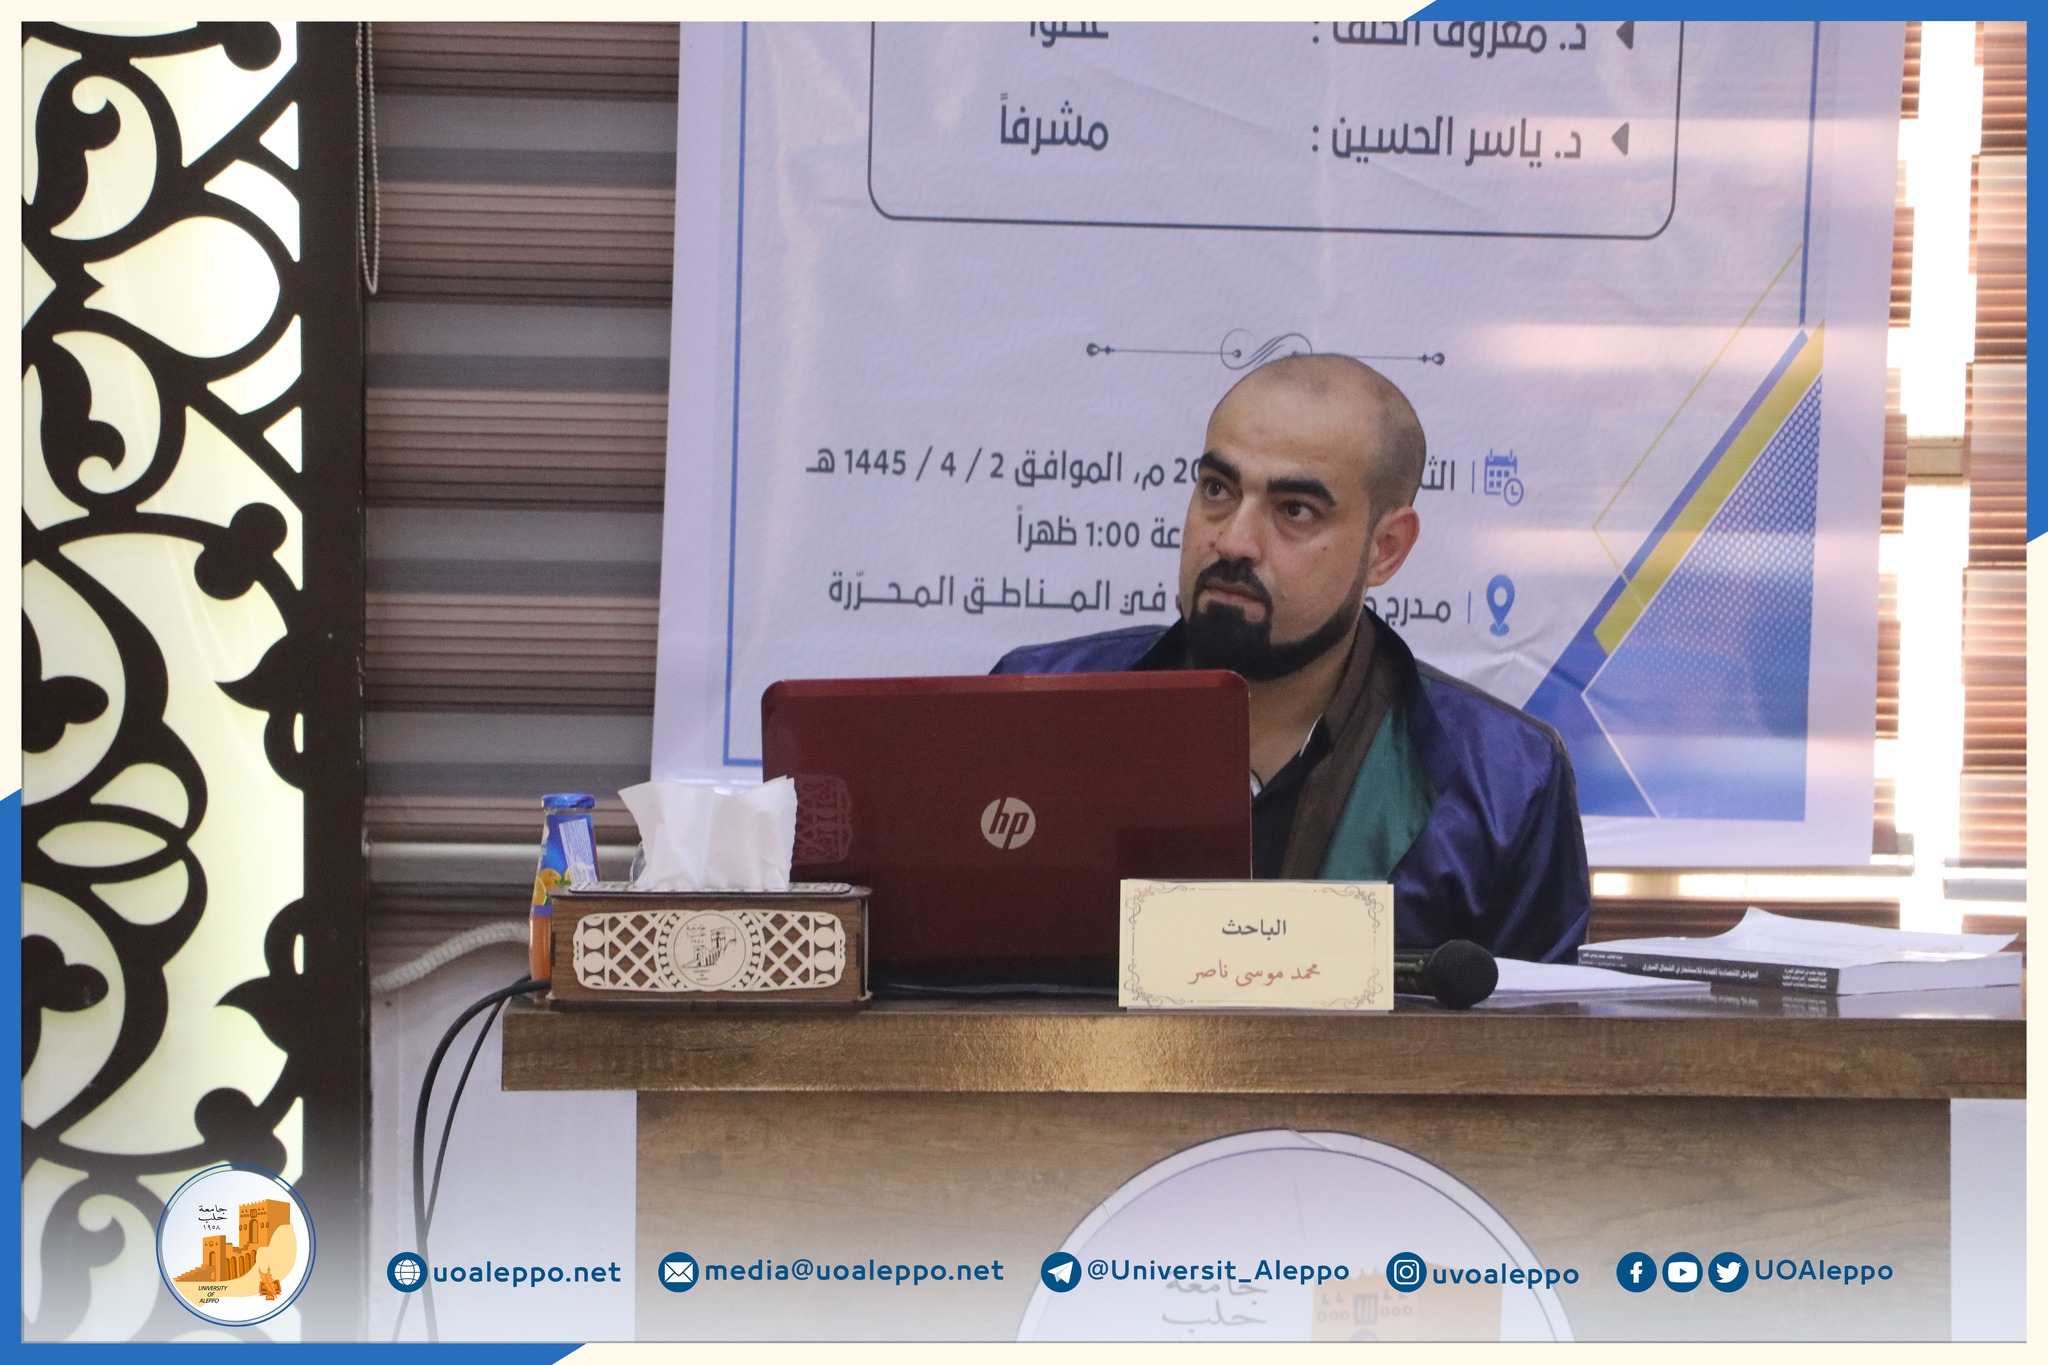 جامعة حلب في المناطق المحرّرة تمنح درجة الماجستير في الاقتصاد للطالب محمد موسى ناصر